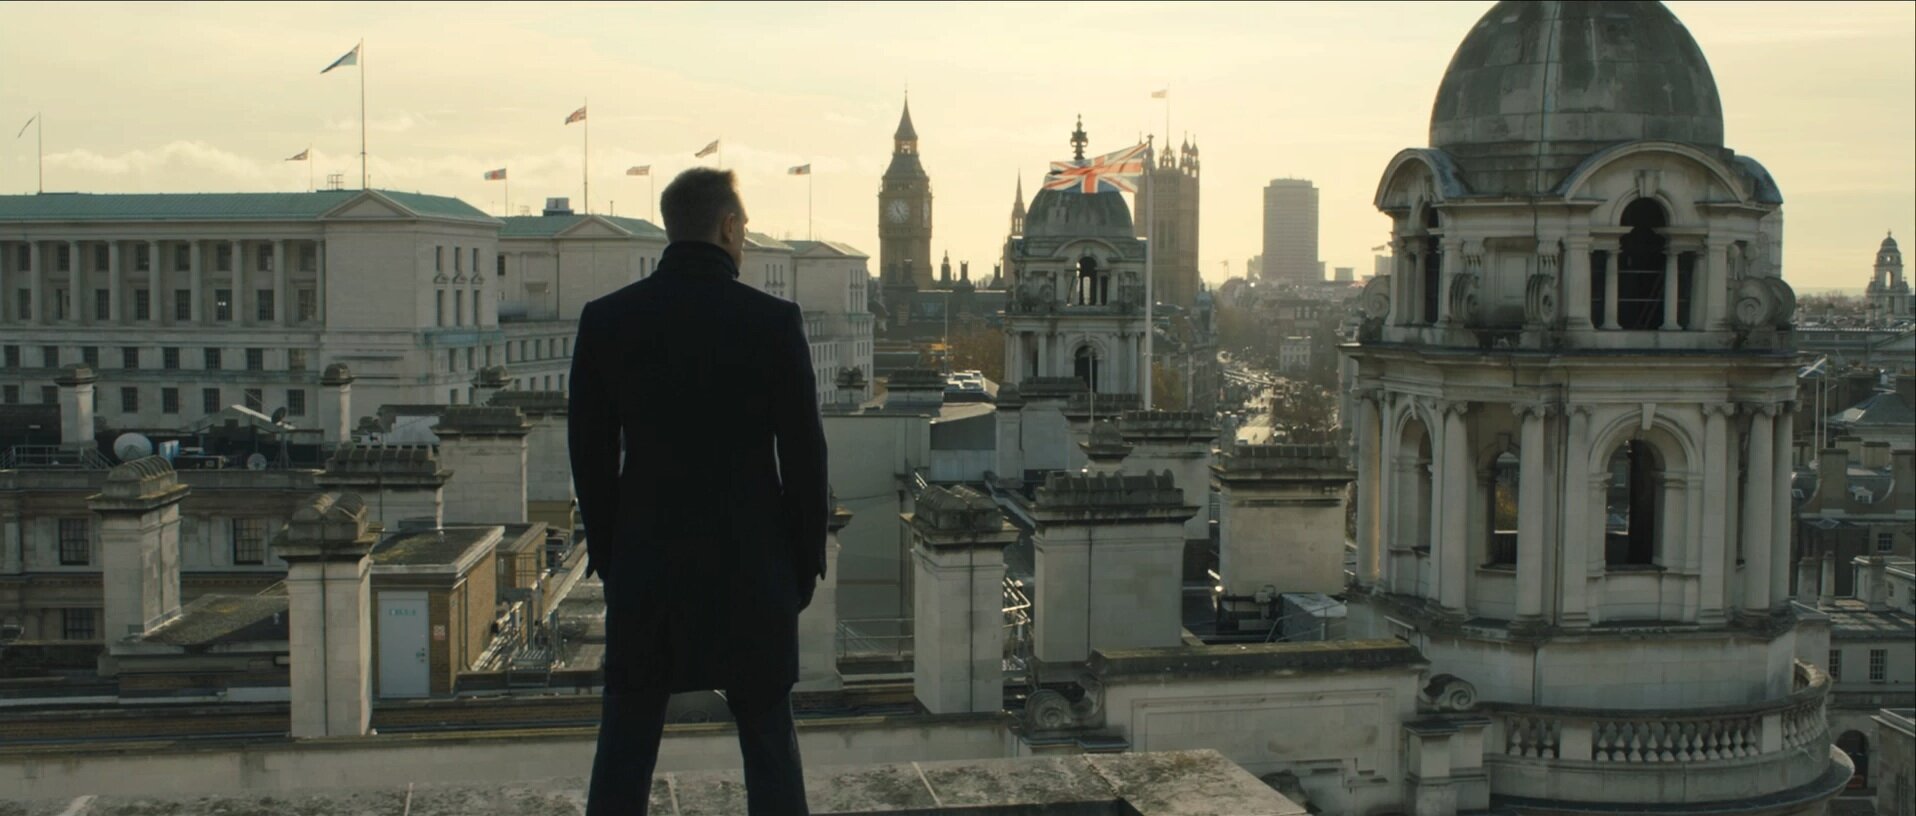 Skyfall teaser trailer - London